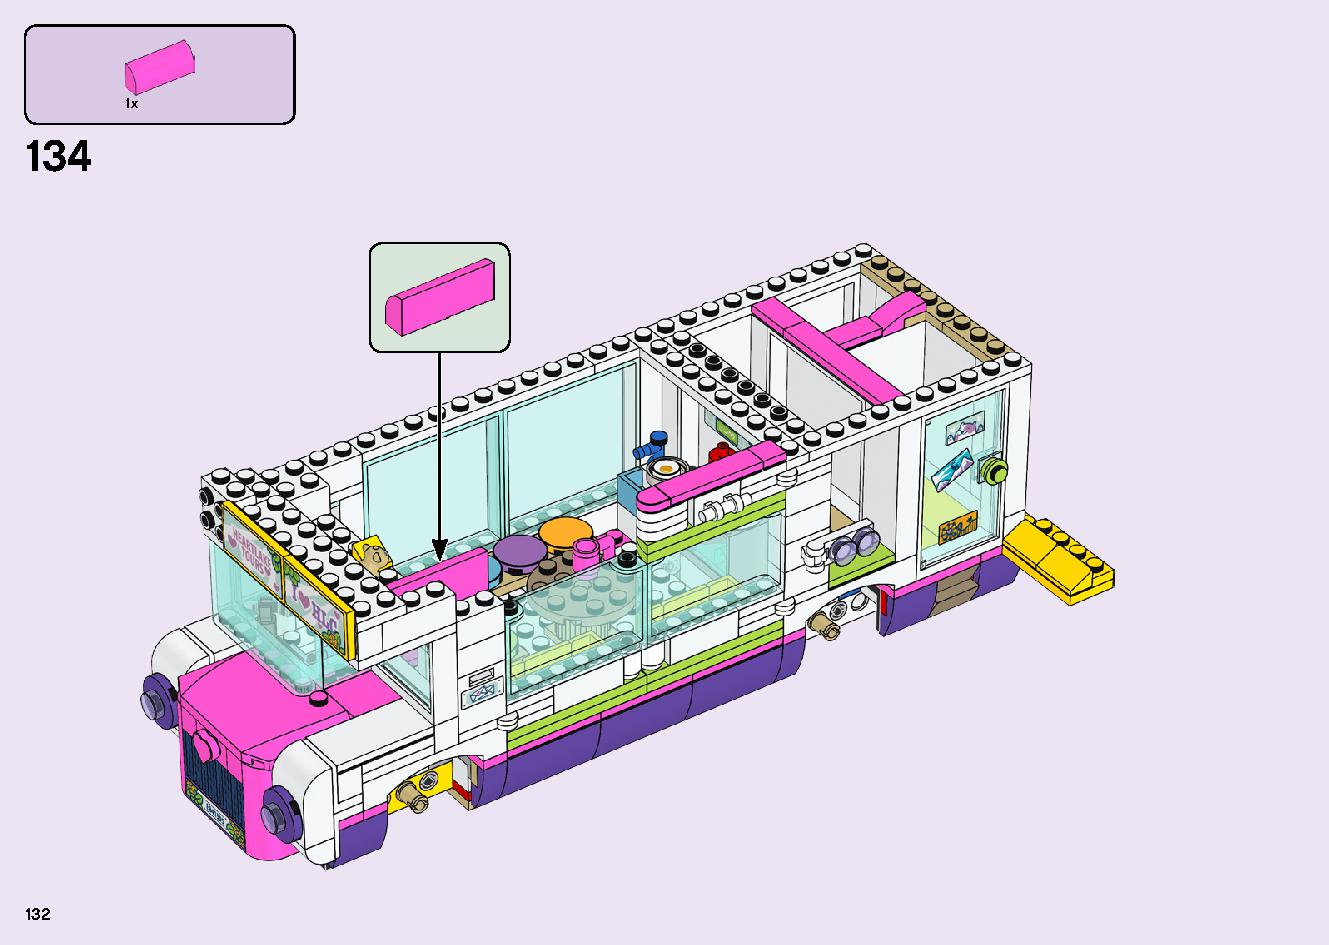 フレンズのうきうきハッピー・バス 41395 レゴの商品情報 レゴの説明書・組立方法 132 page